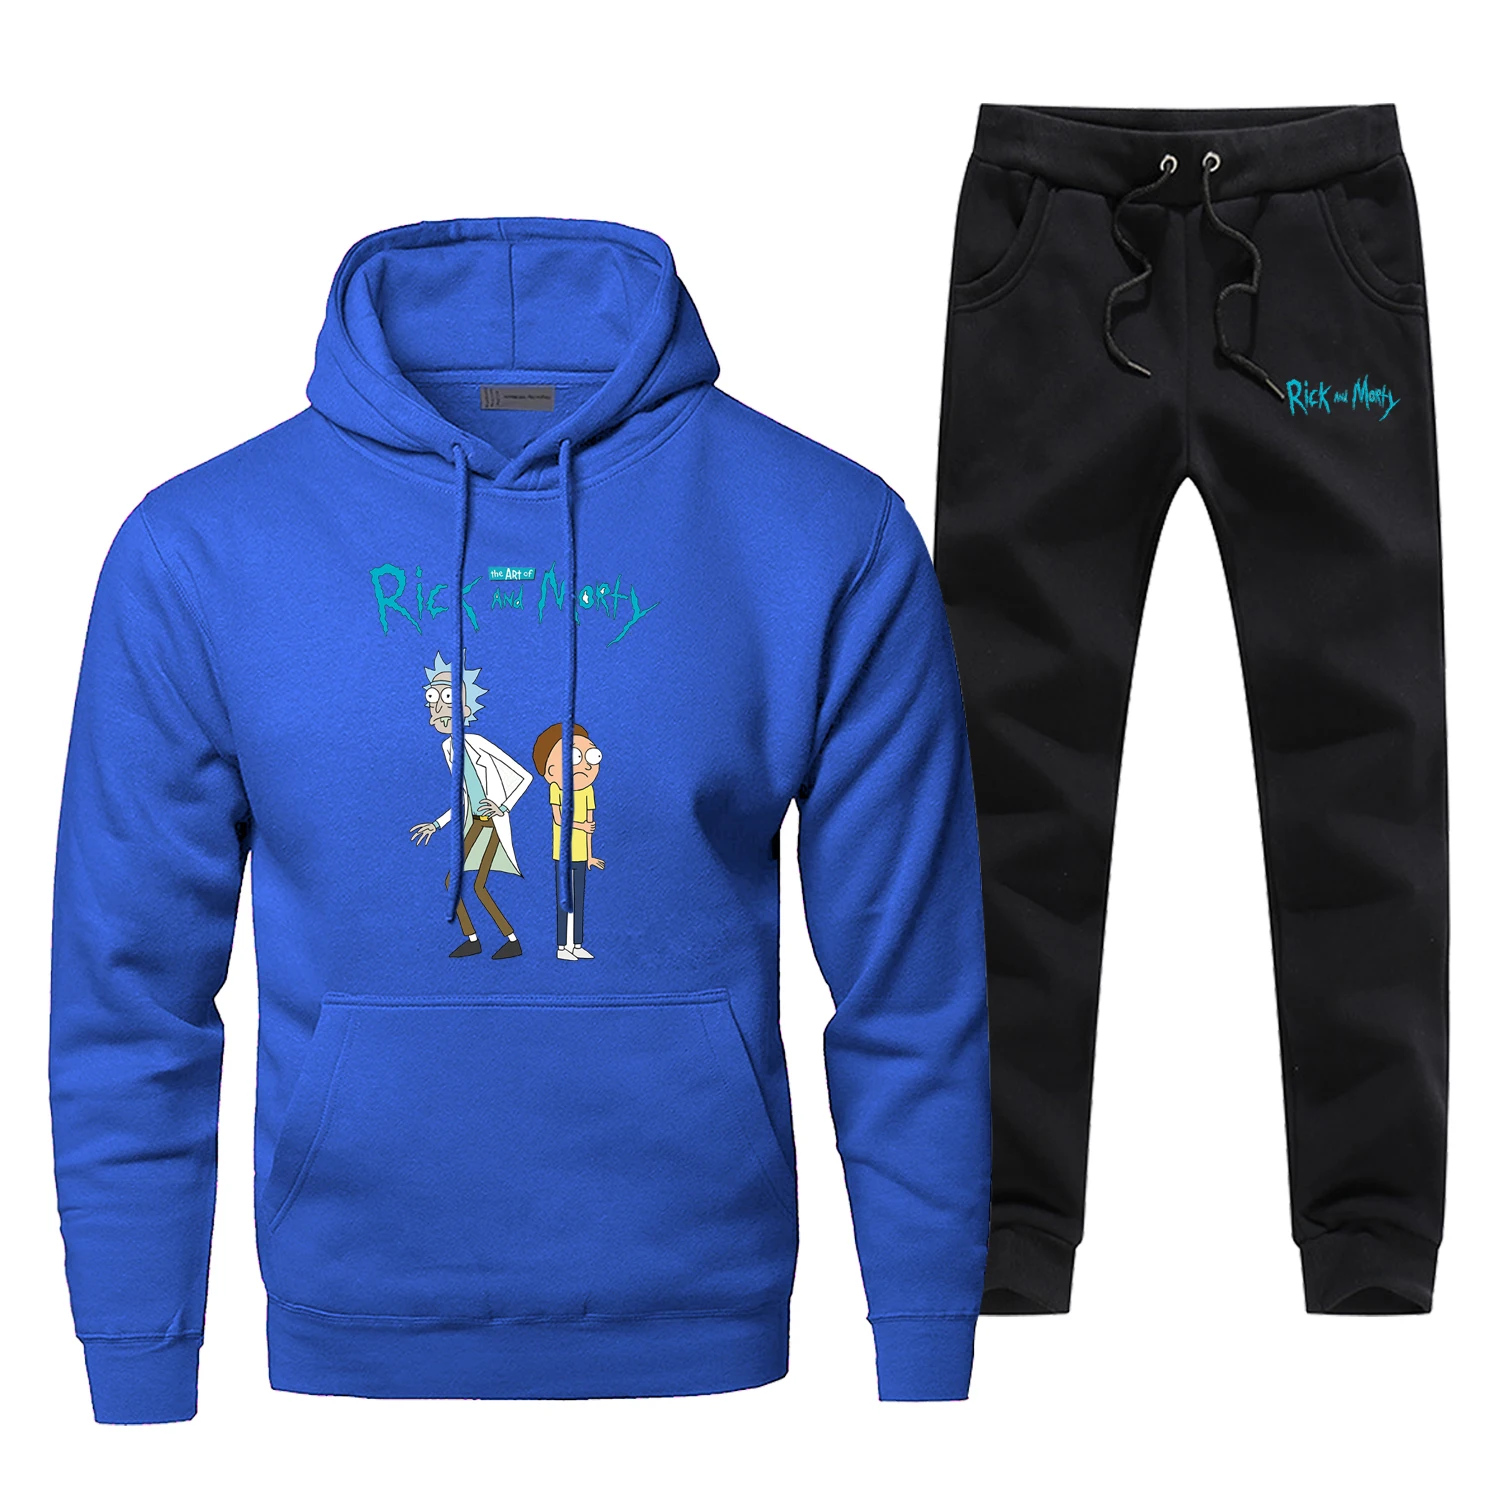 Мужские комплекты с принтом Рика и Морти, популярные брюки в стиле аниме, толстовка, модные флисовые толстовки, толстовка, дешевый комплект из 2 предметов, теплая уличная одежда